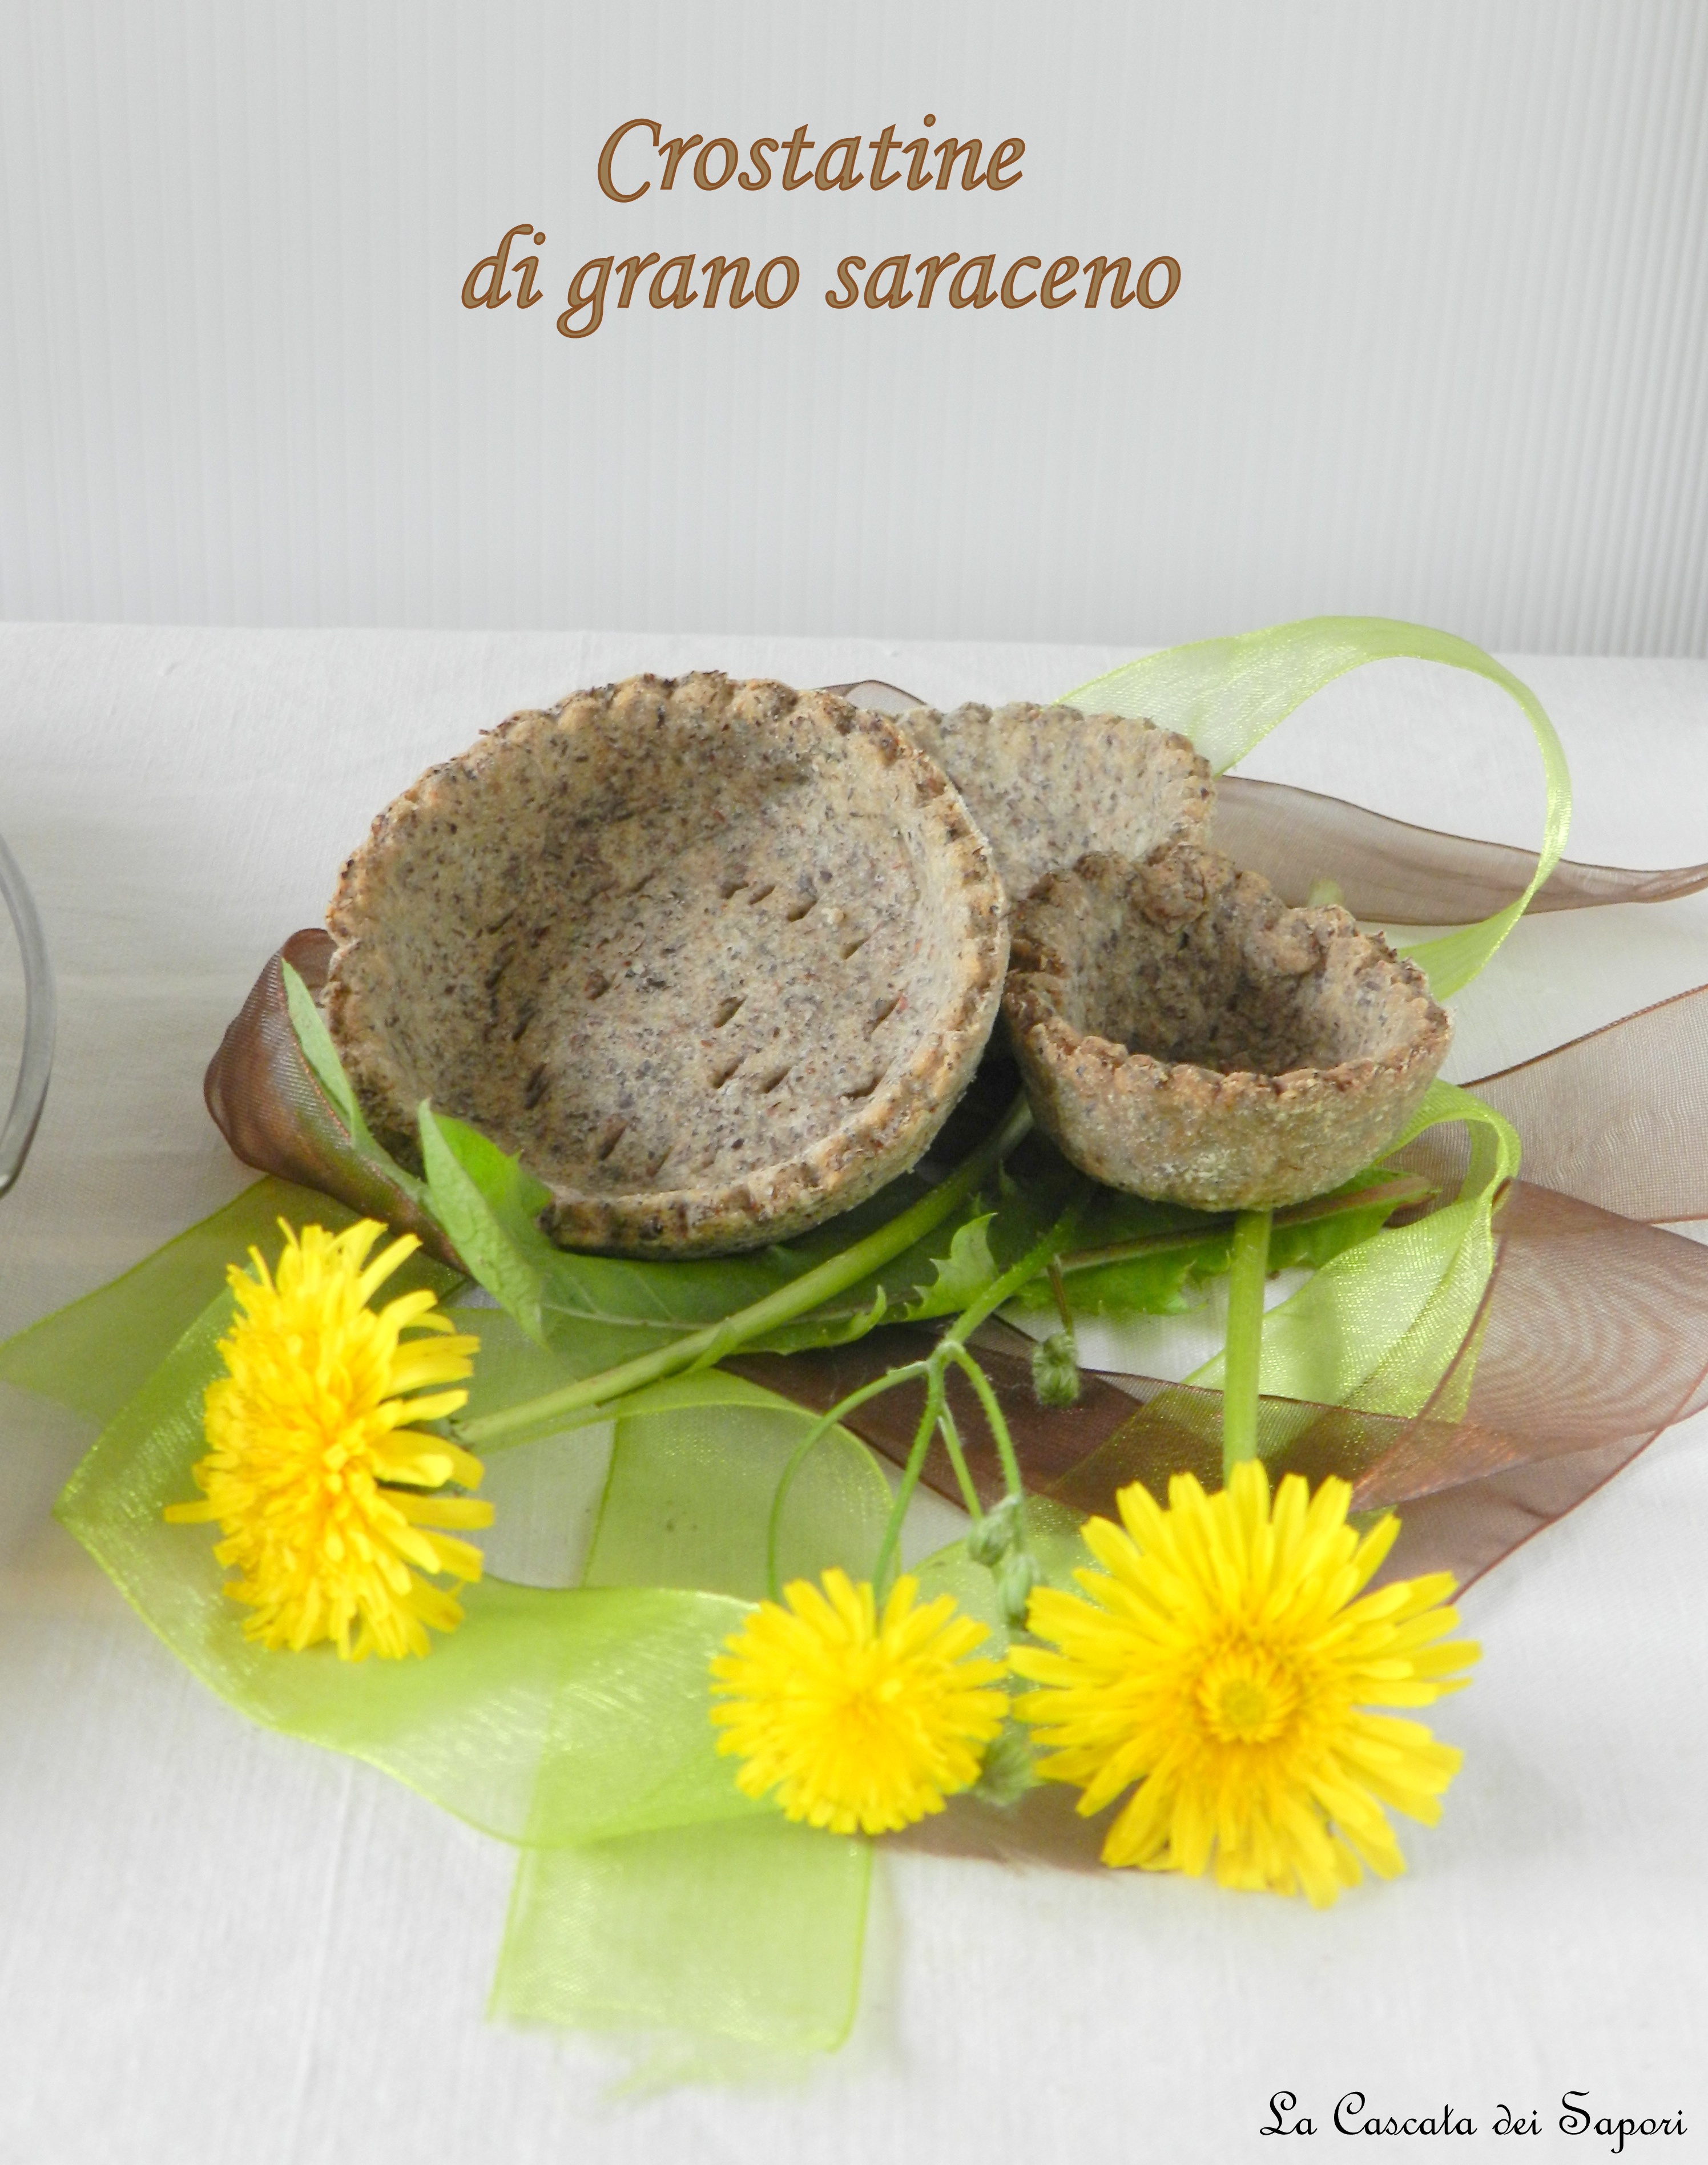 Crostatine con farina di grano saraceno alla crema di Tarassaco con ricotta e miele di castagno